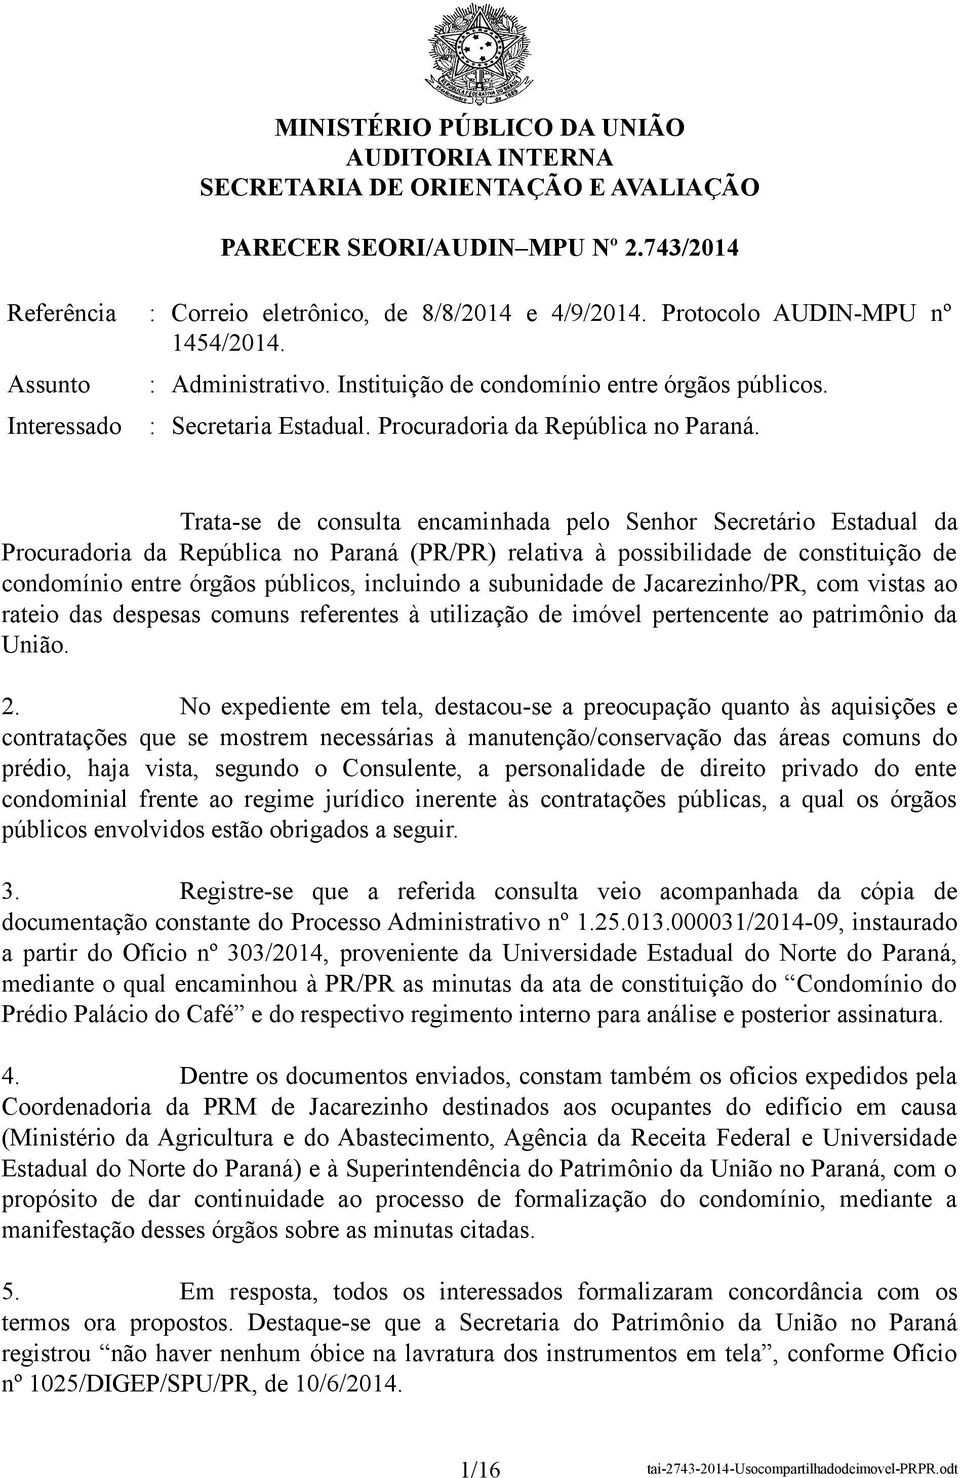 Trata-se de consulta encaminhada pelo Senhor Secretário Estadual da Procuradoria da República no Paraná (PR/PR) relativa à possibilidade de constituição de condomínio entre órgãos públicos, incluindo